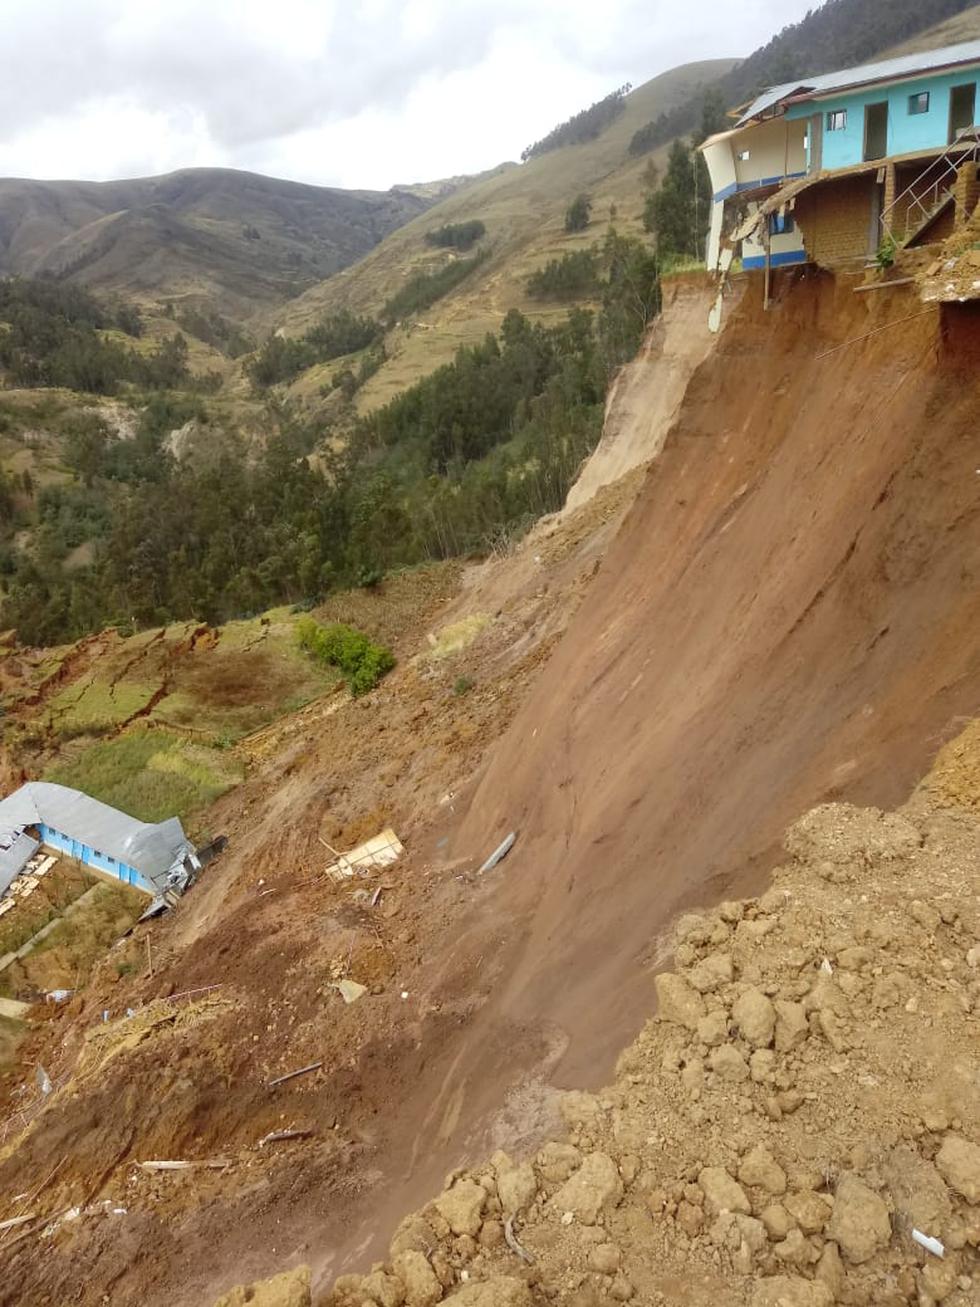 Deslizamientos causan estragos en la ciudad de Sillapata, a 3,459 msnm. (Persy Irribarren Mallqui)